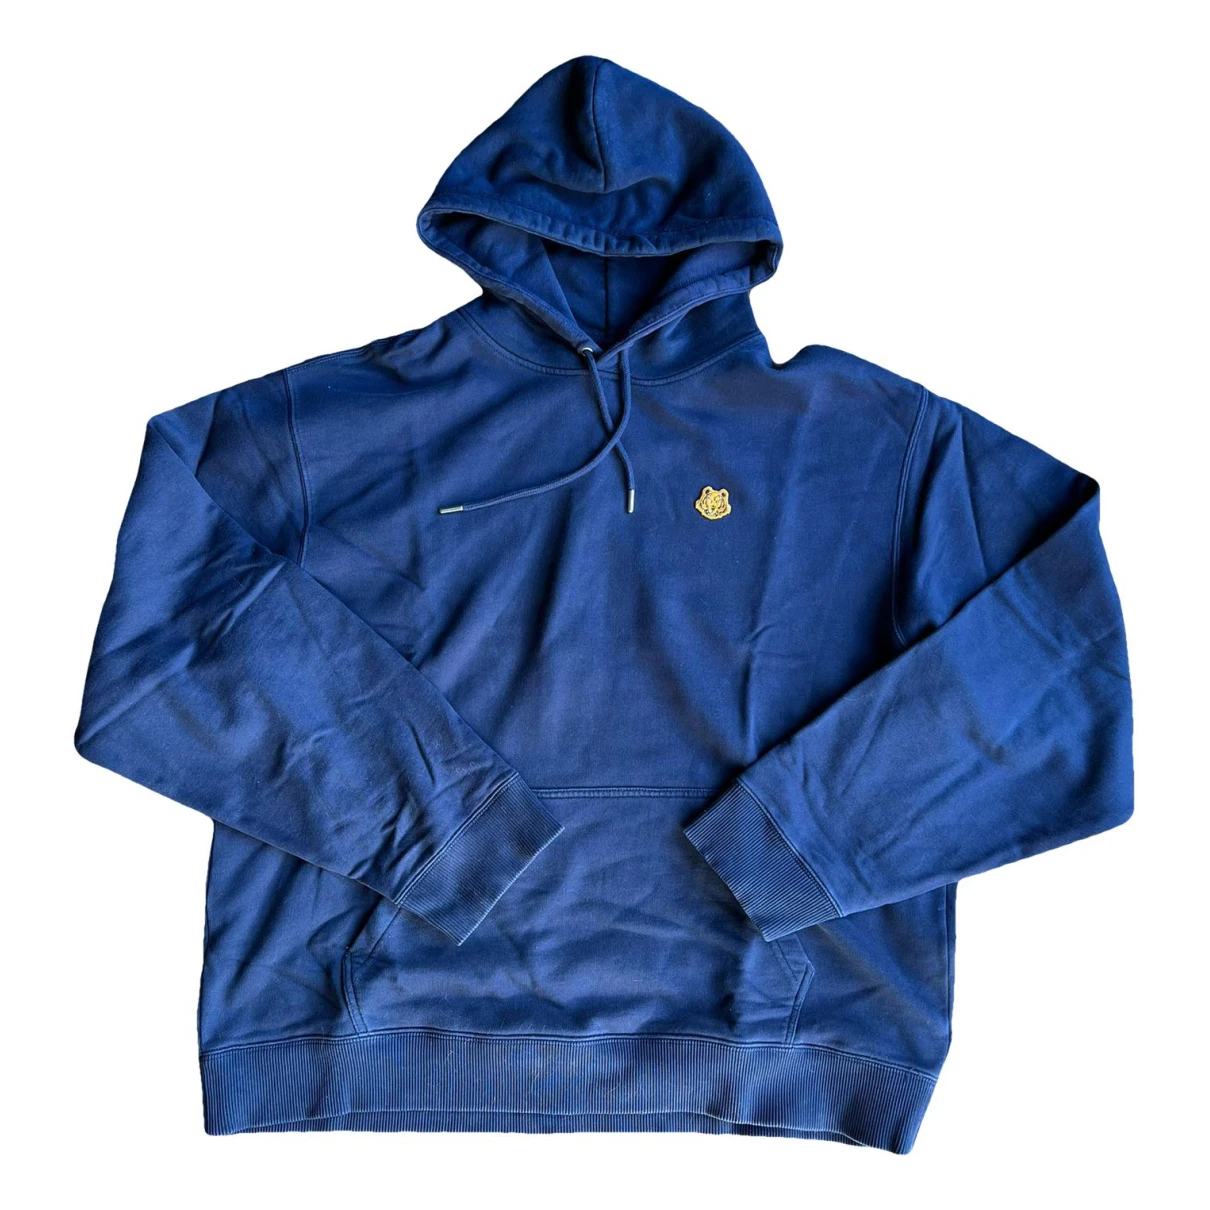 Pre-owned Kenzo Tiger Sweatshirt In Blue